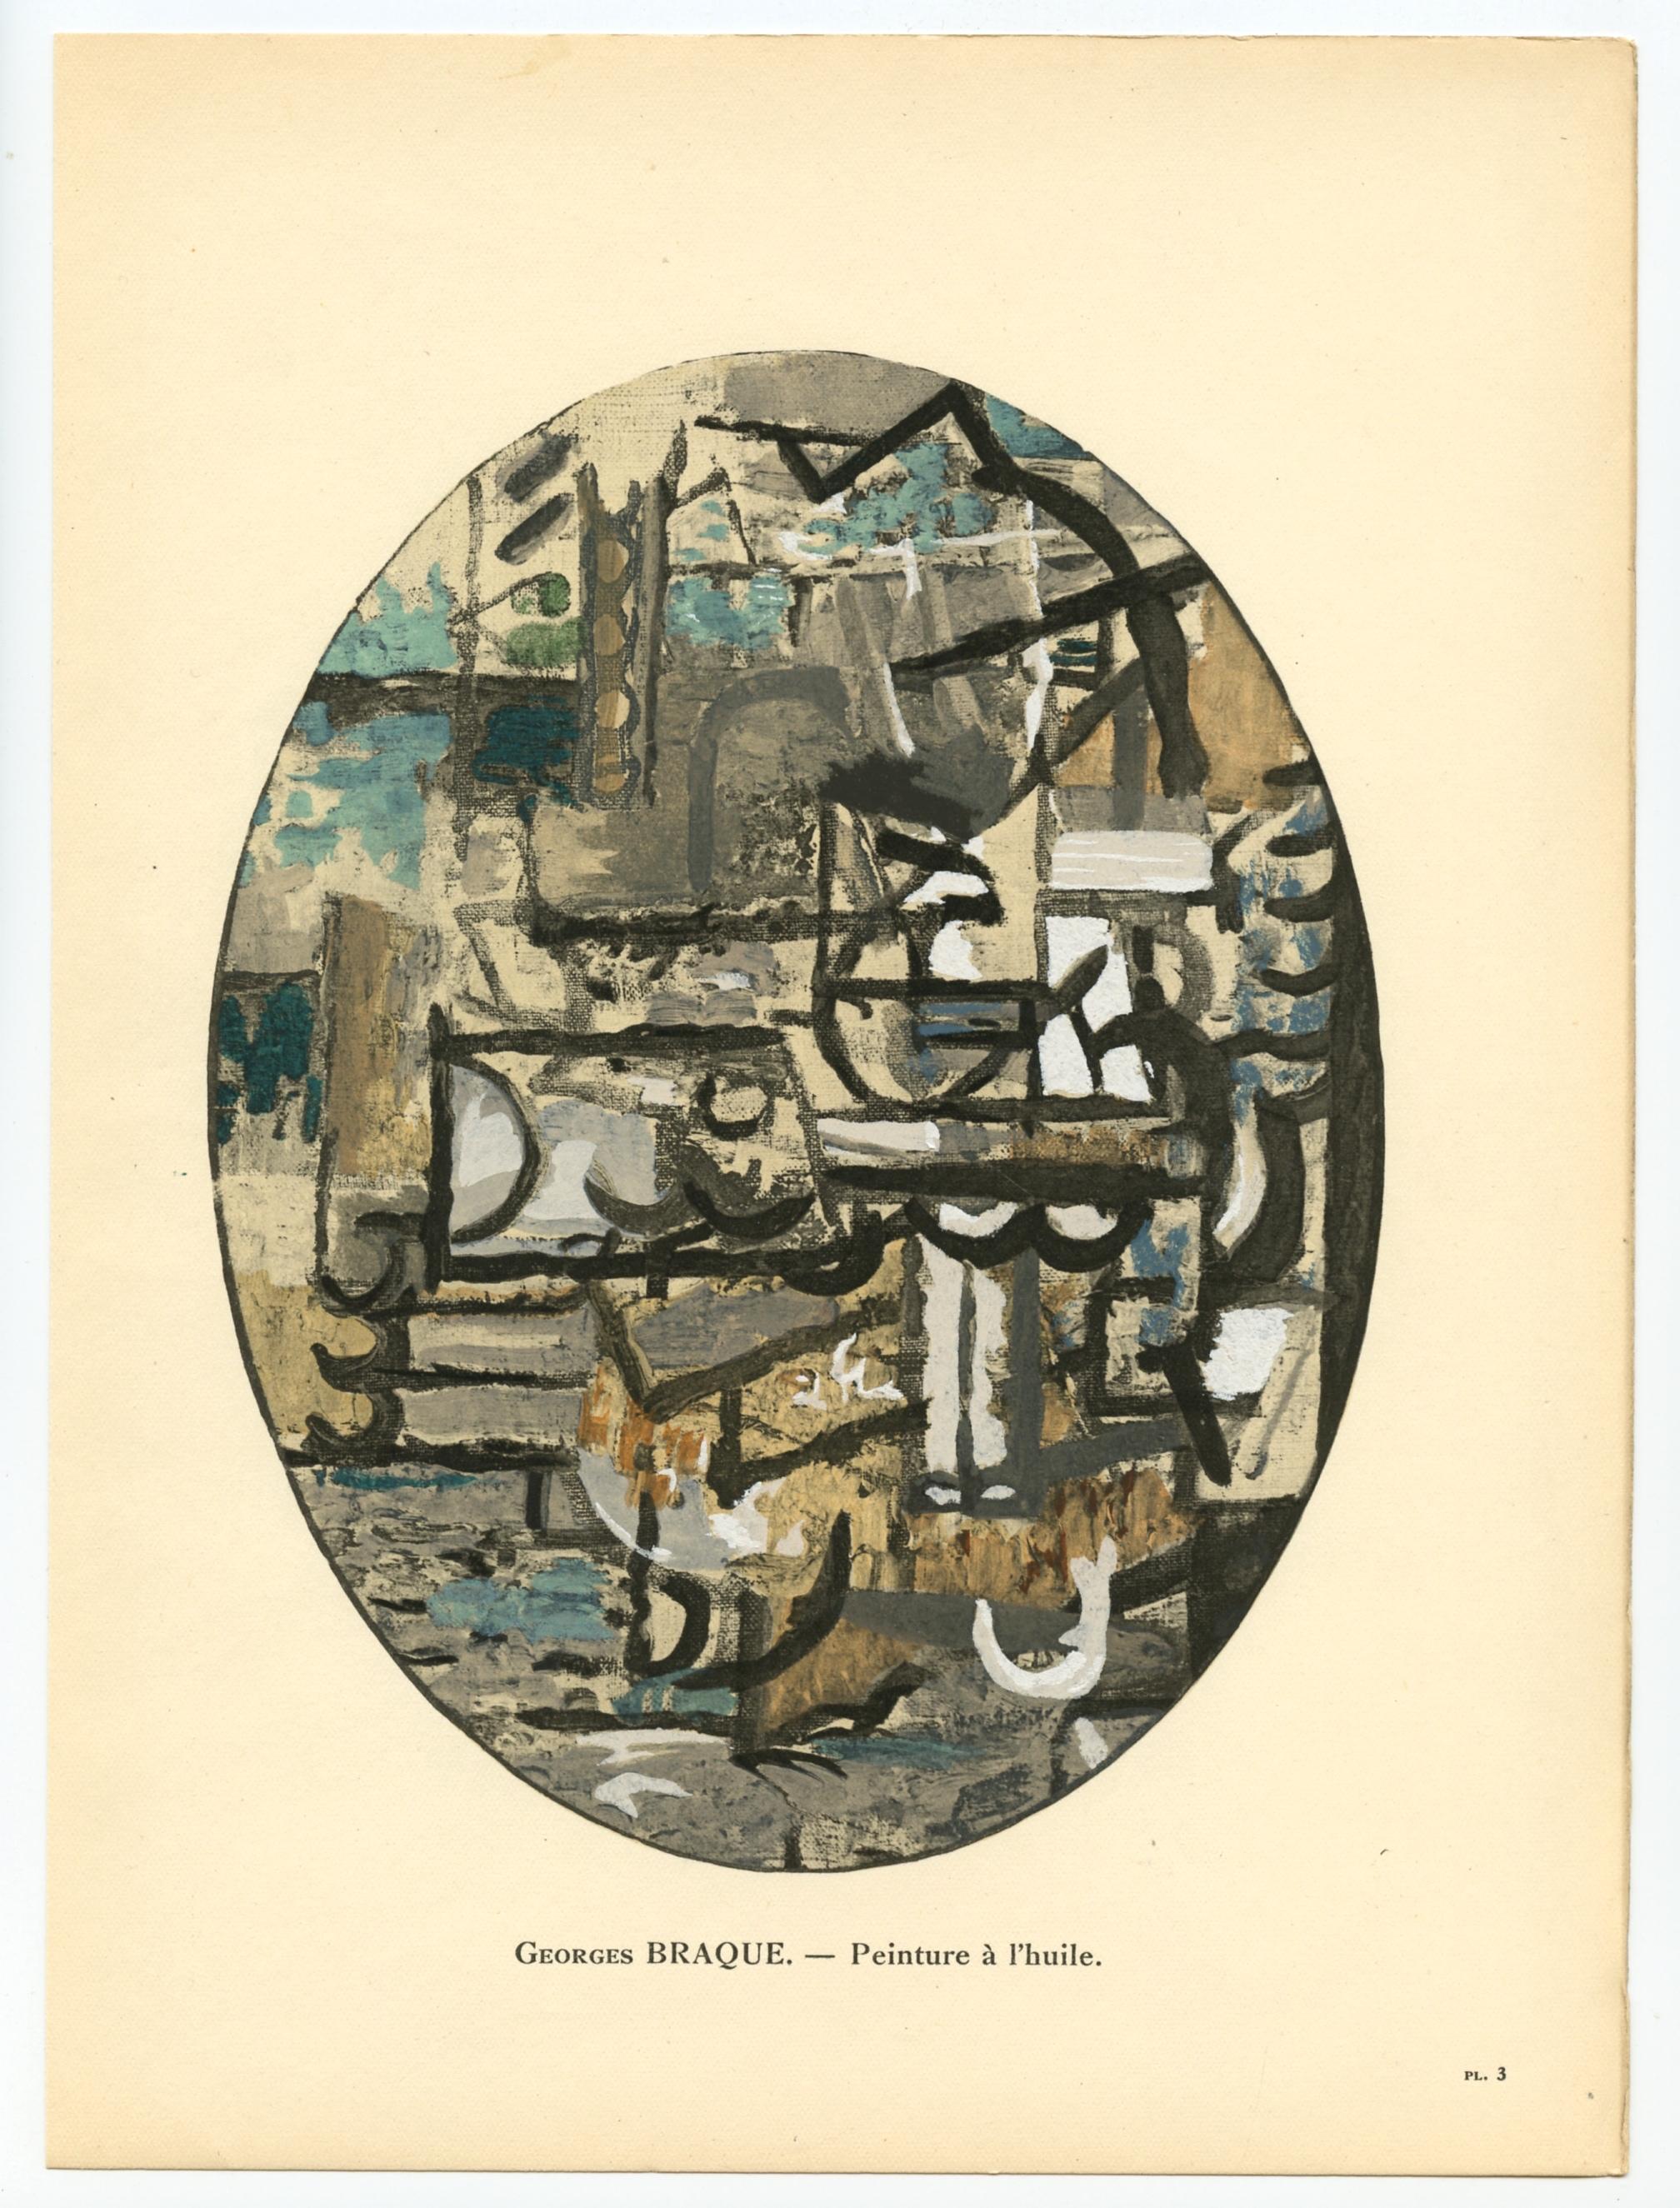 Support : pochoir (d'après la peinture à l'huile). Imprimé à Paris en 1929 dans l'atelier de Daniel Jacomet pour L'Art Cubiste. Taille de l'image : 7 1/2 x 6 pouces (193 x 150 mm). Une inscription sous l'image identifie l'artiste. Non signé. 